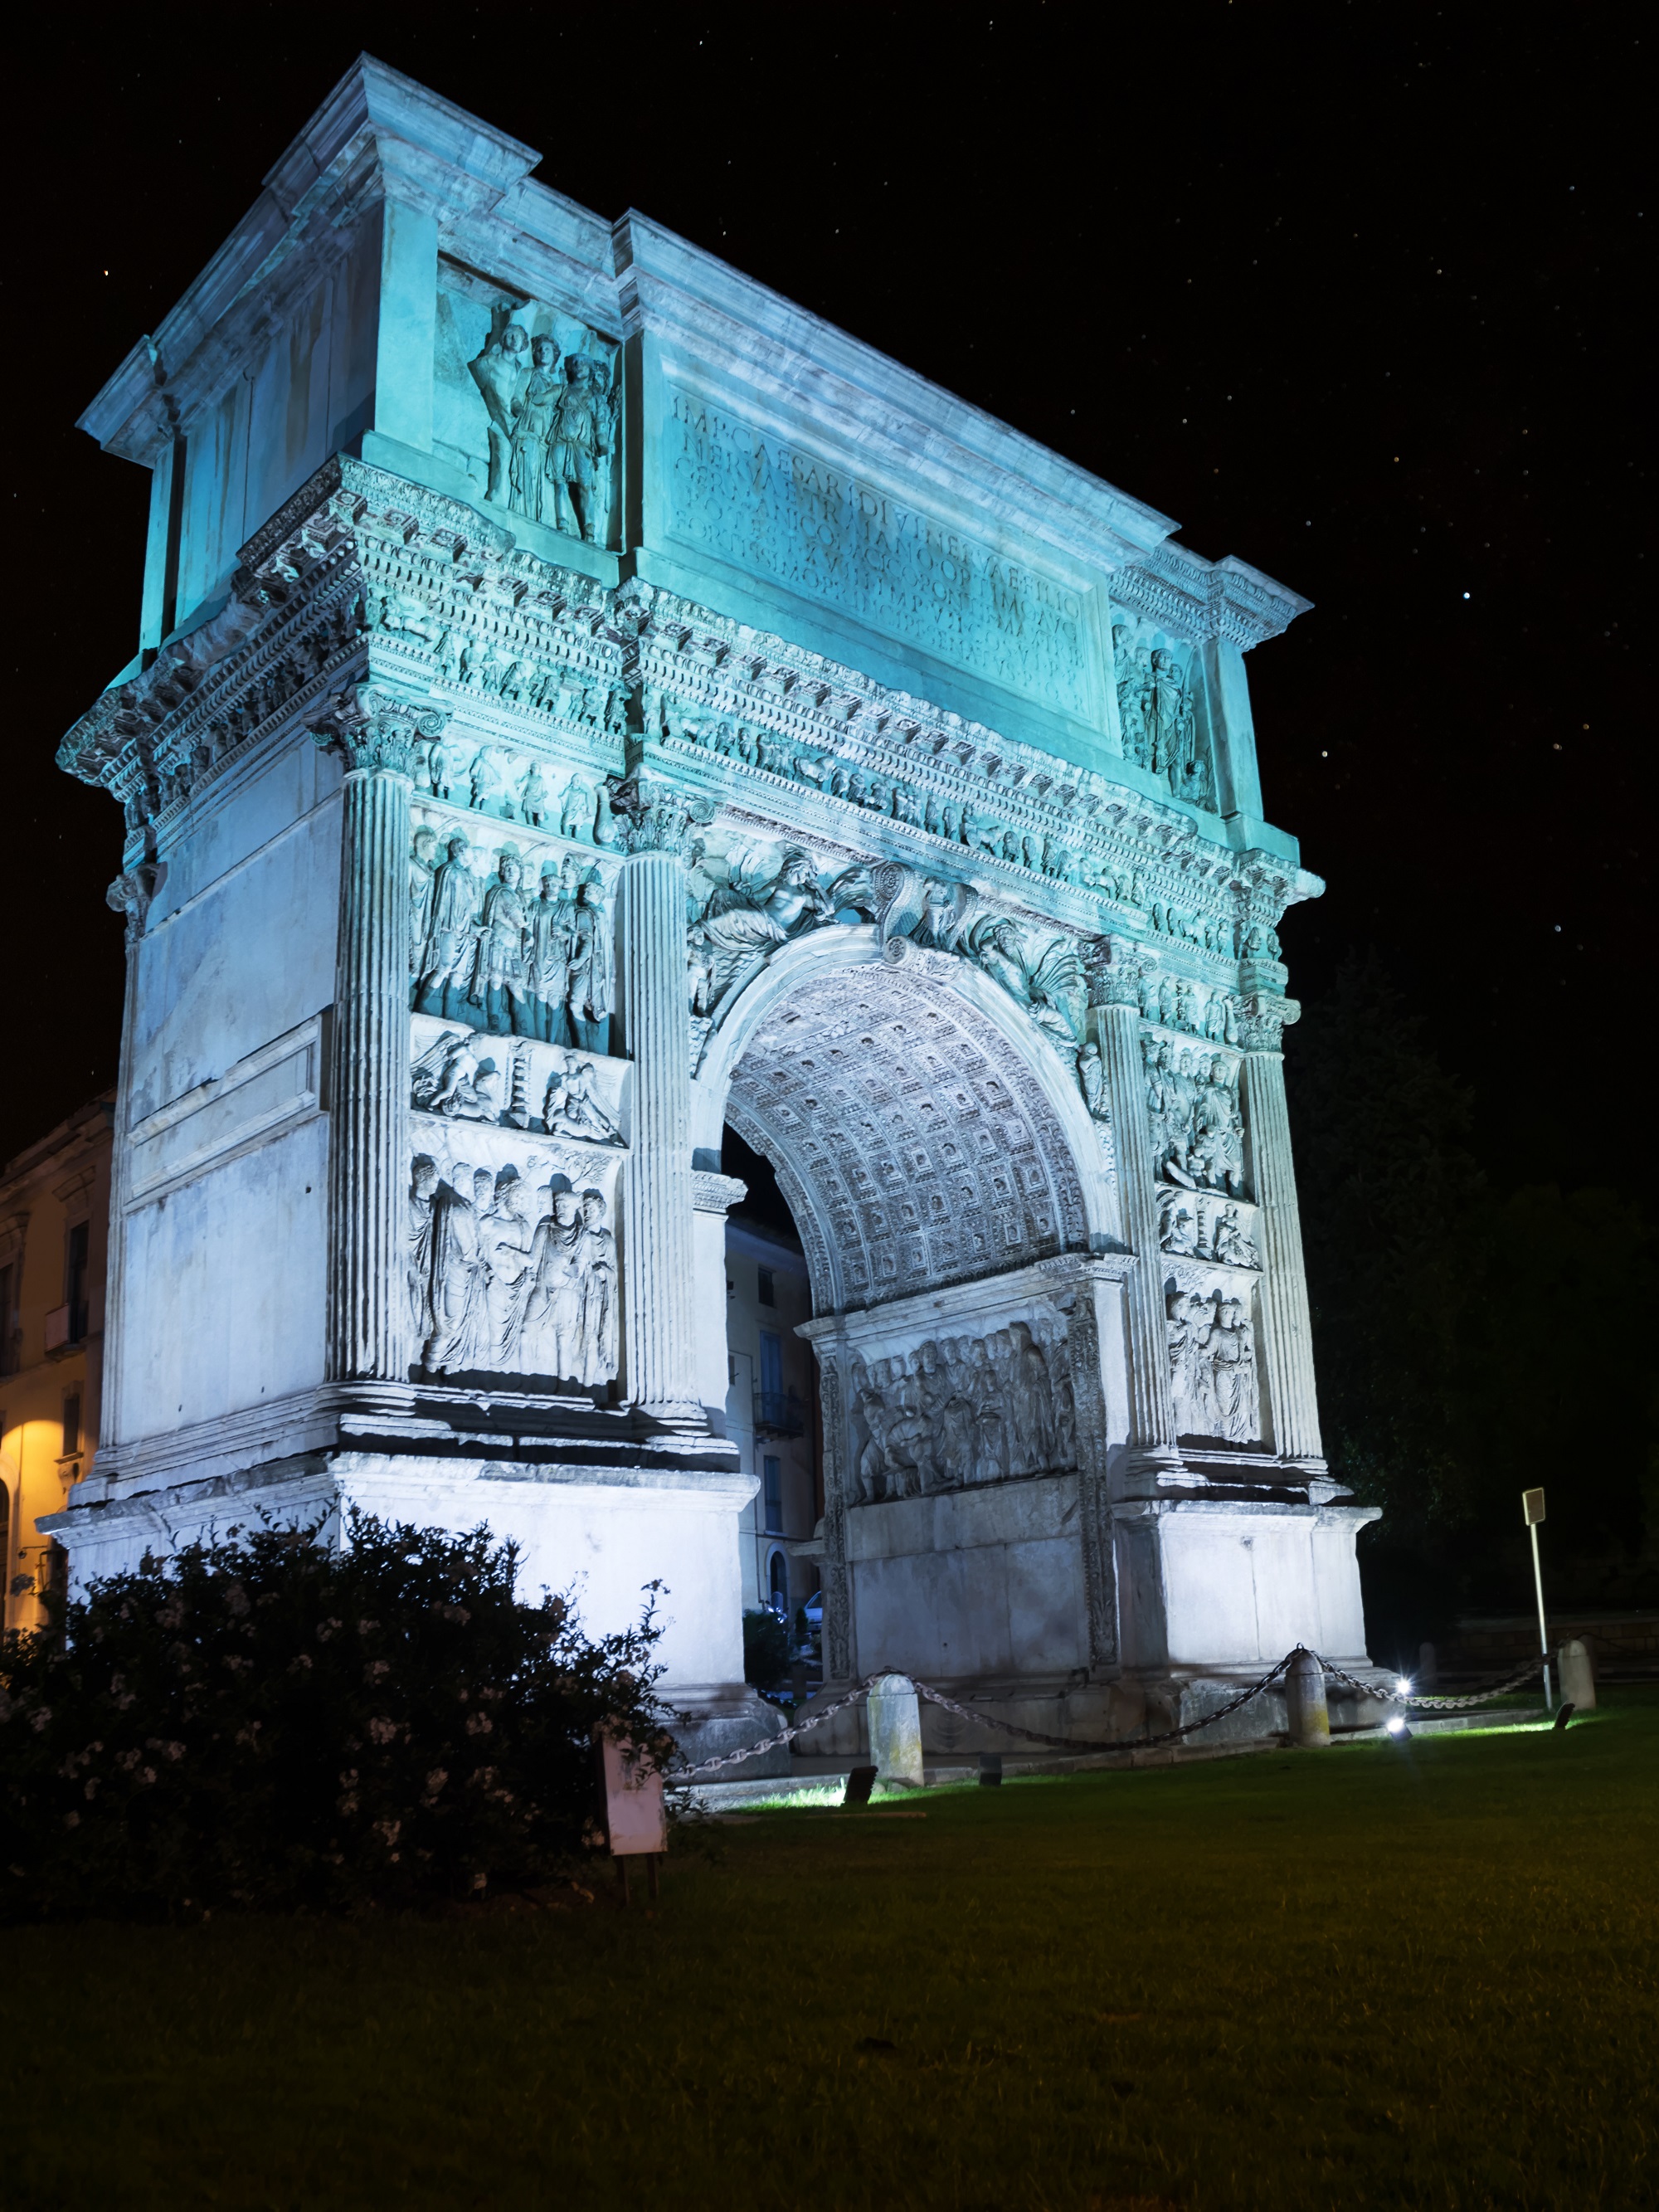 L’Arco di Traiano sabato s’illuminerà di bianco e lunedì di azzurro